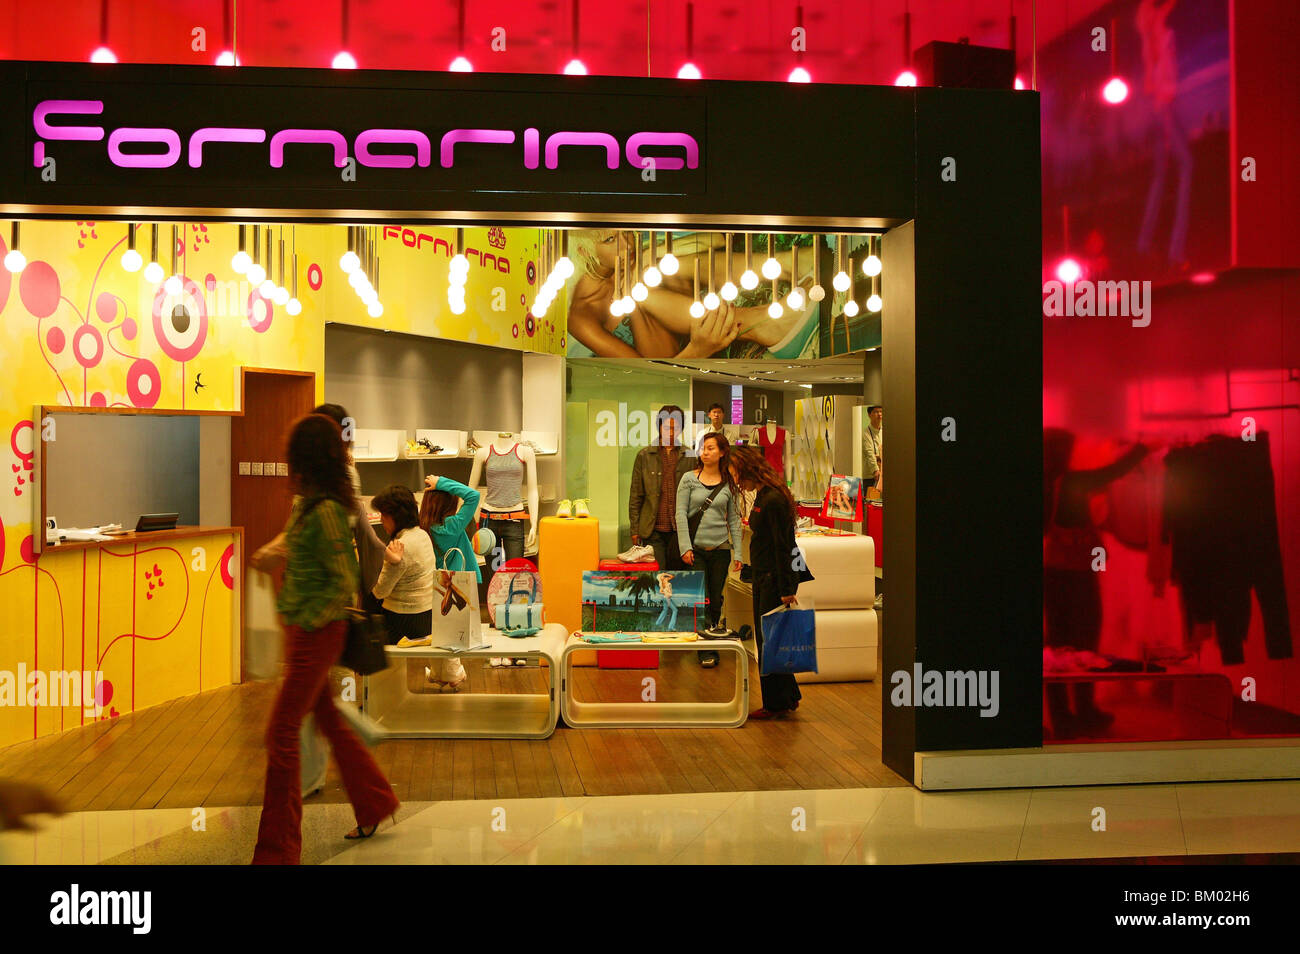 Gallerie dello shopping di Shanghai, centri commerciali, negozi, magazzini, mega centri commerciali, multipiano, pubblicità, consumatori, moda, design Foto Stock